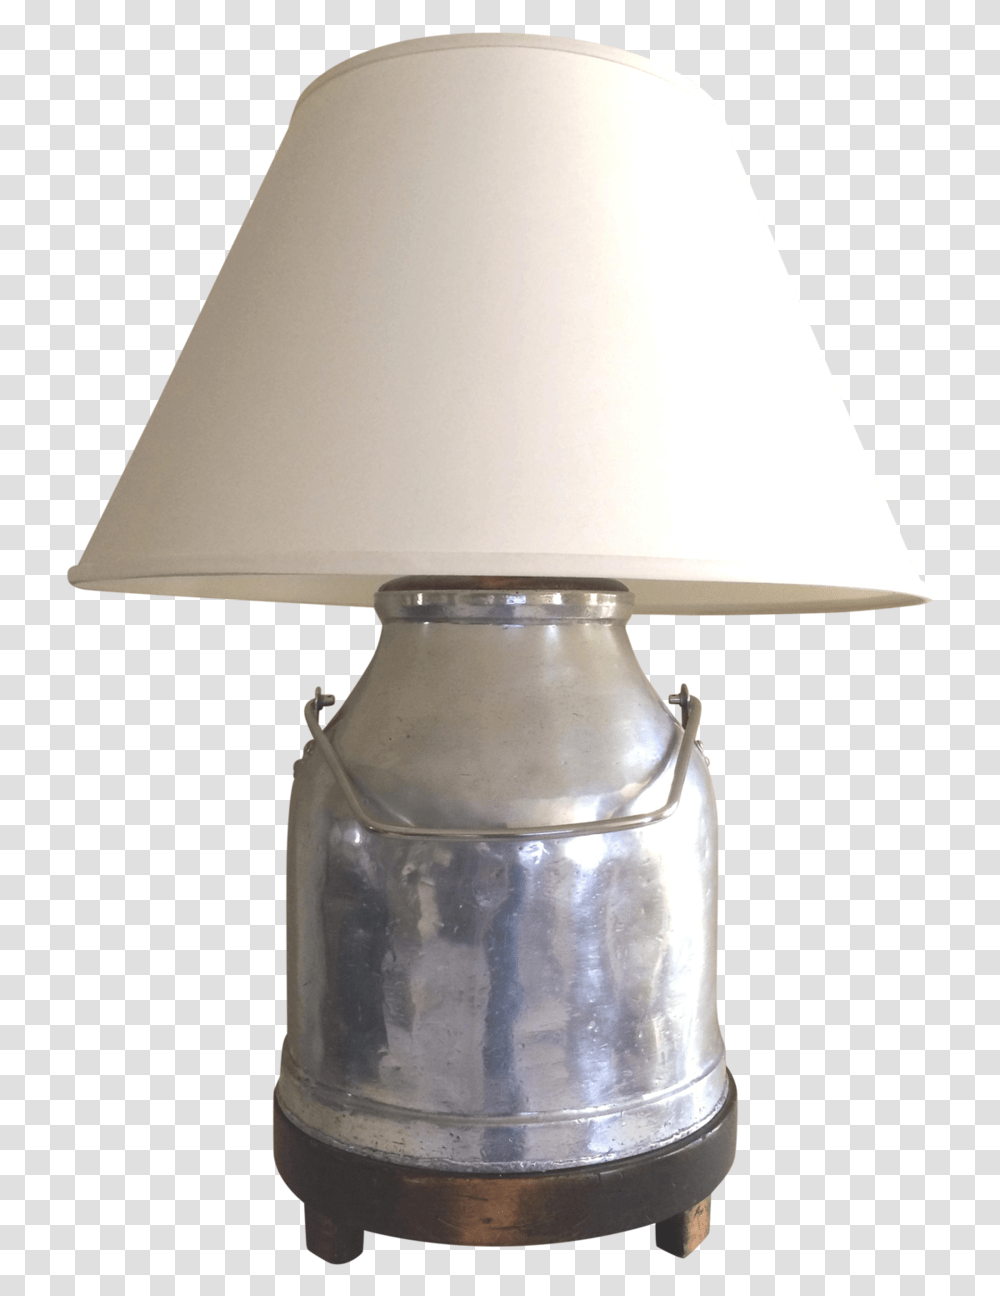 Pixar Lamp Lamp, Tin, Can, Milk, Beverage Transparent Png